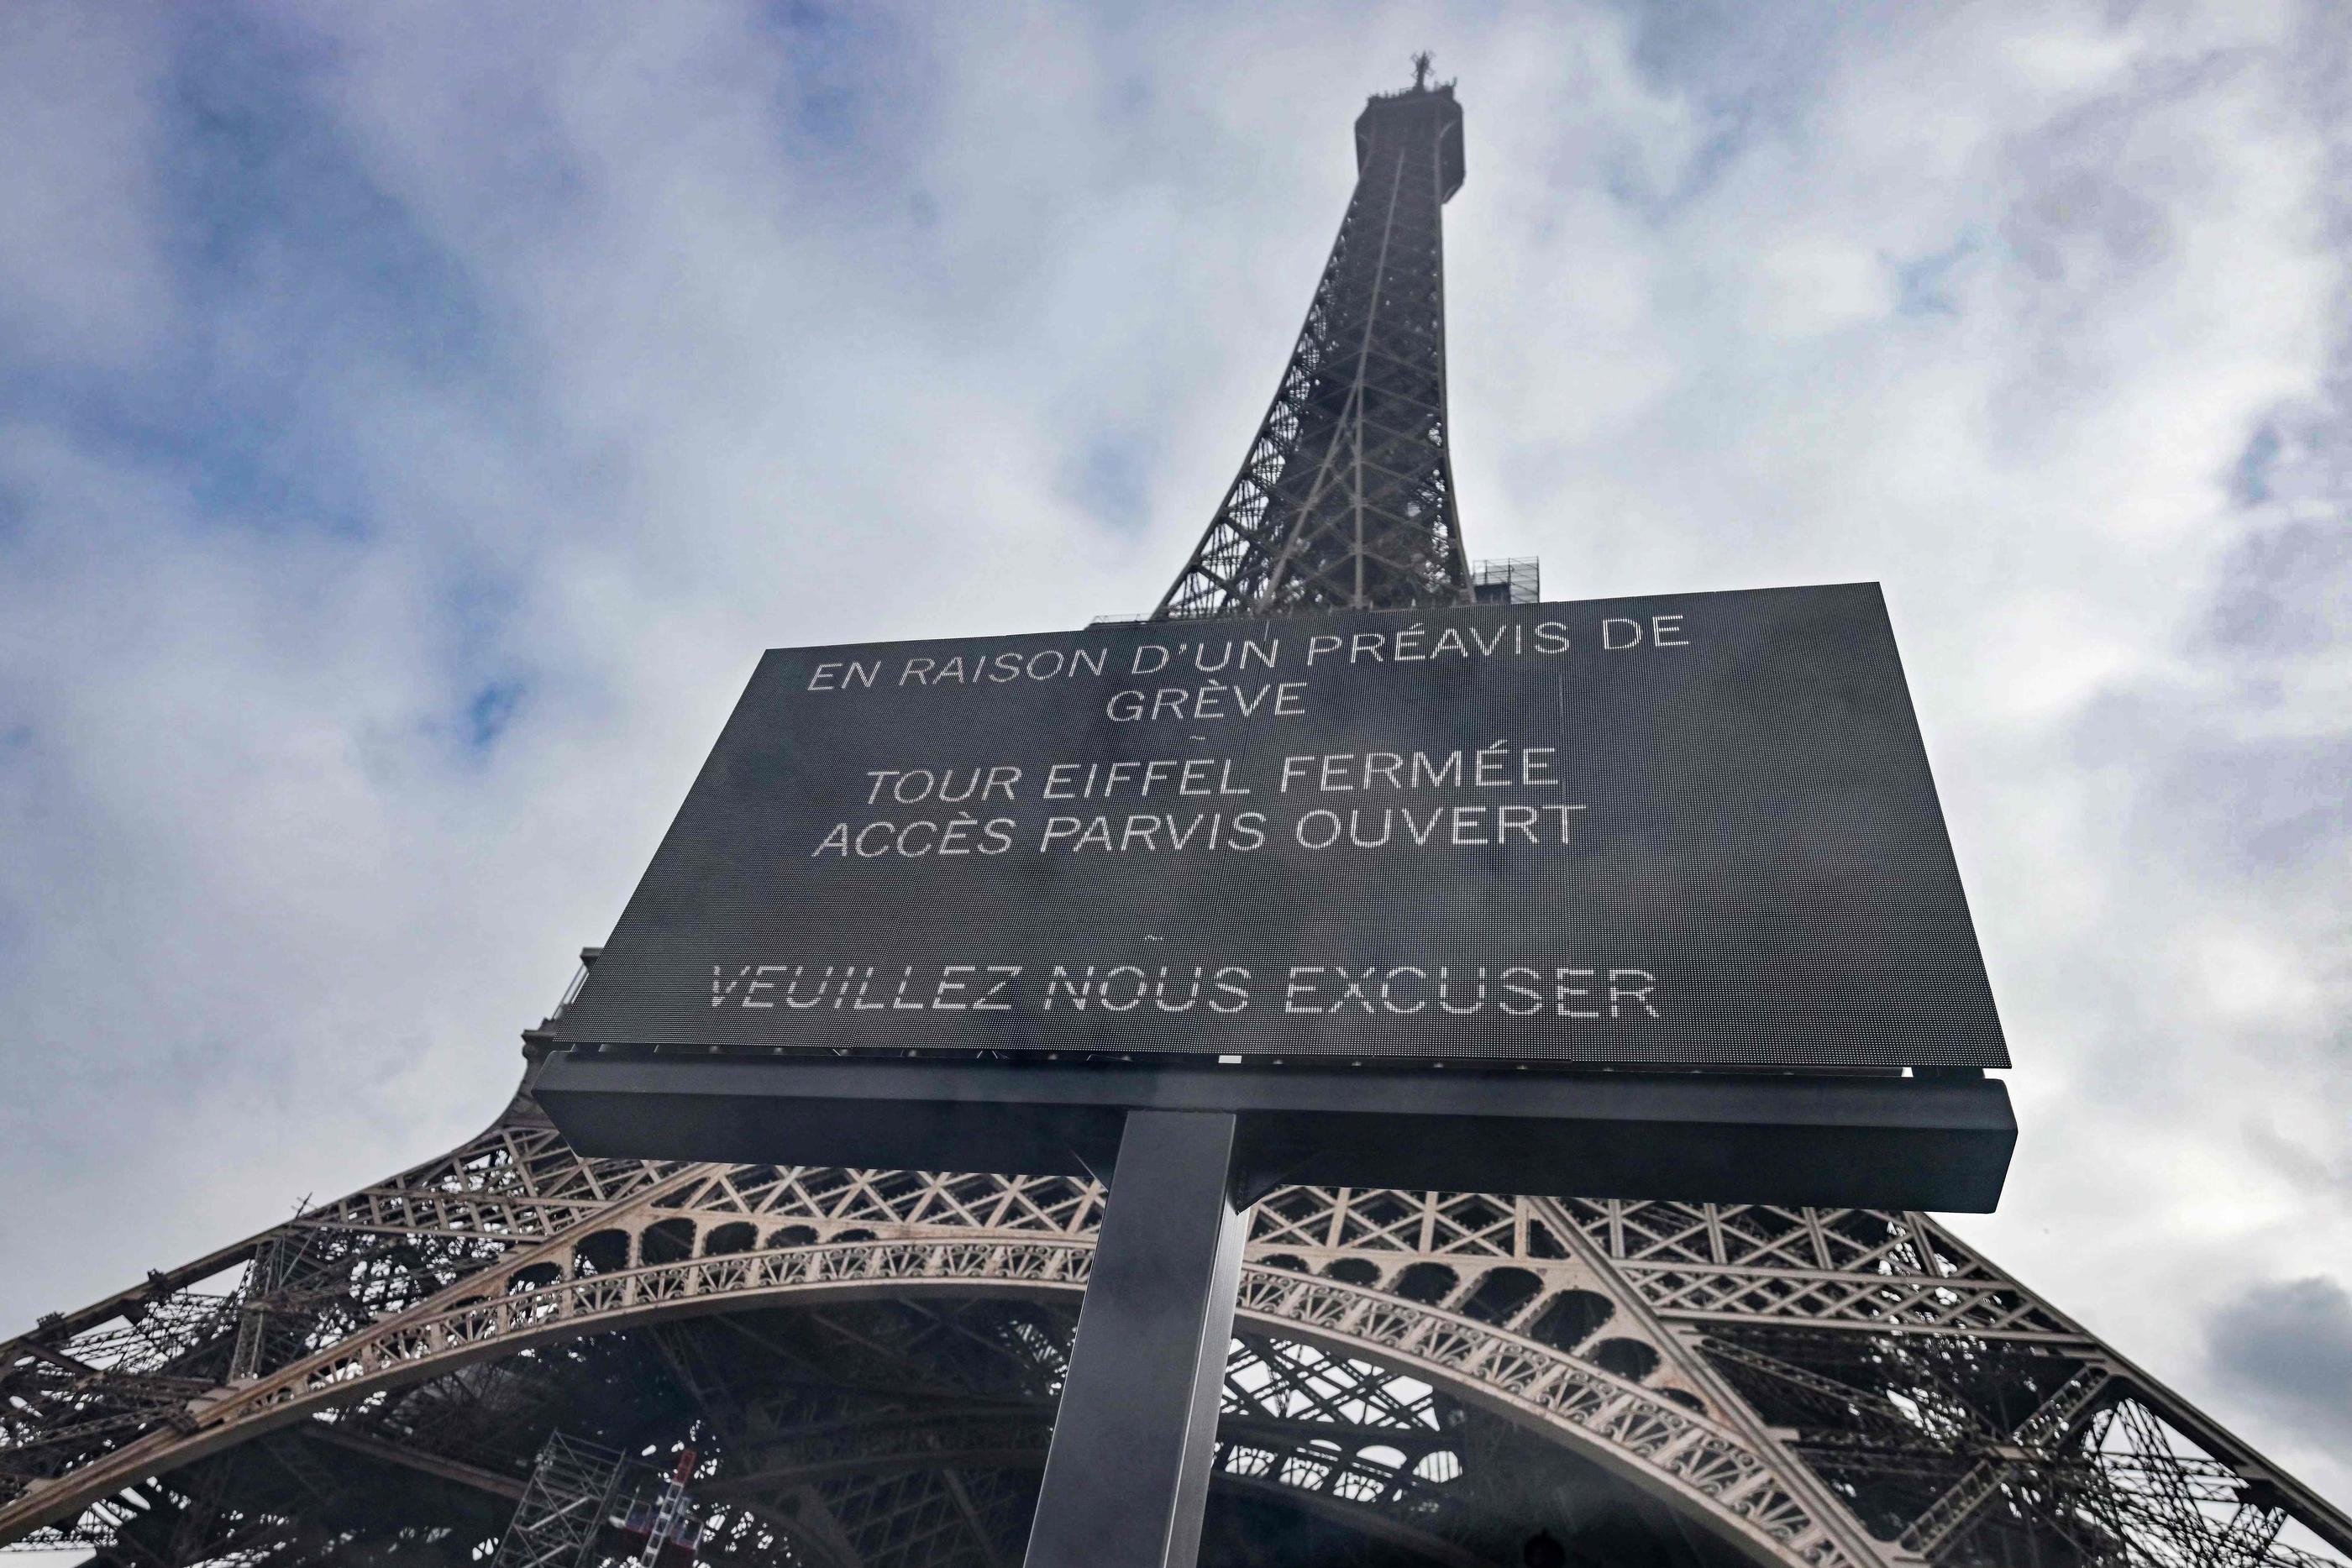 Tour Eiffel - Le célébrissime symbole de Paris